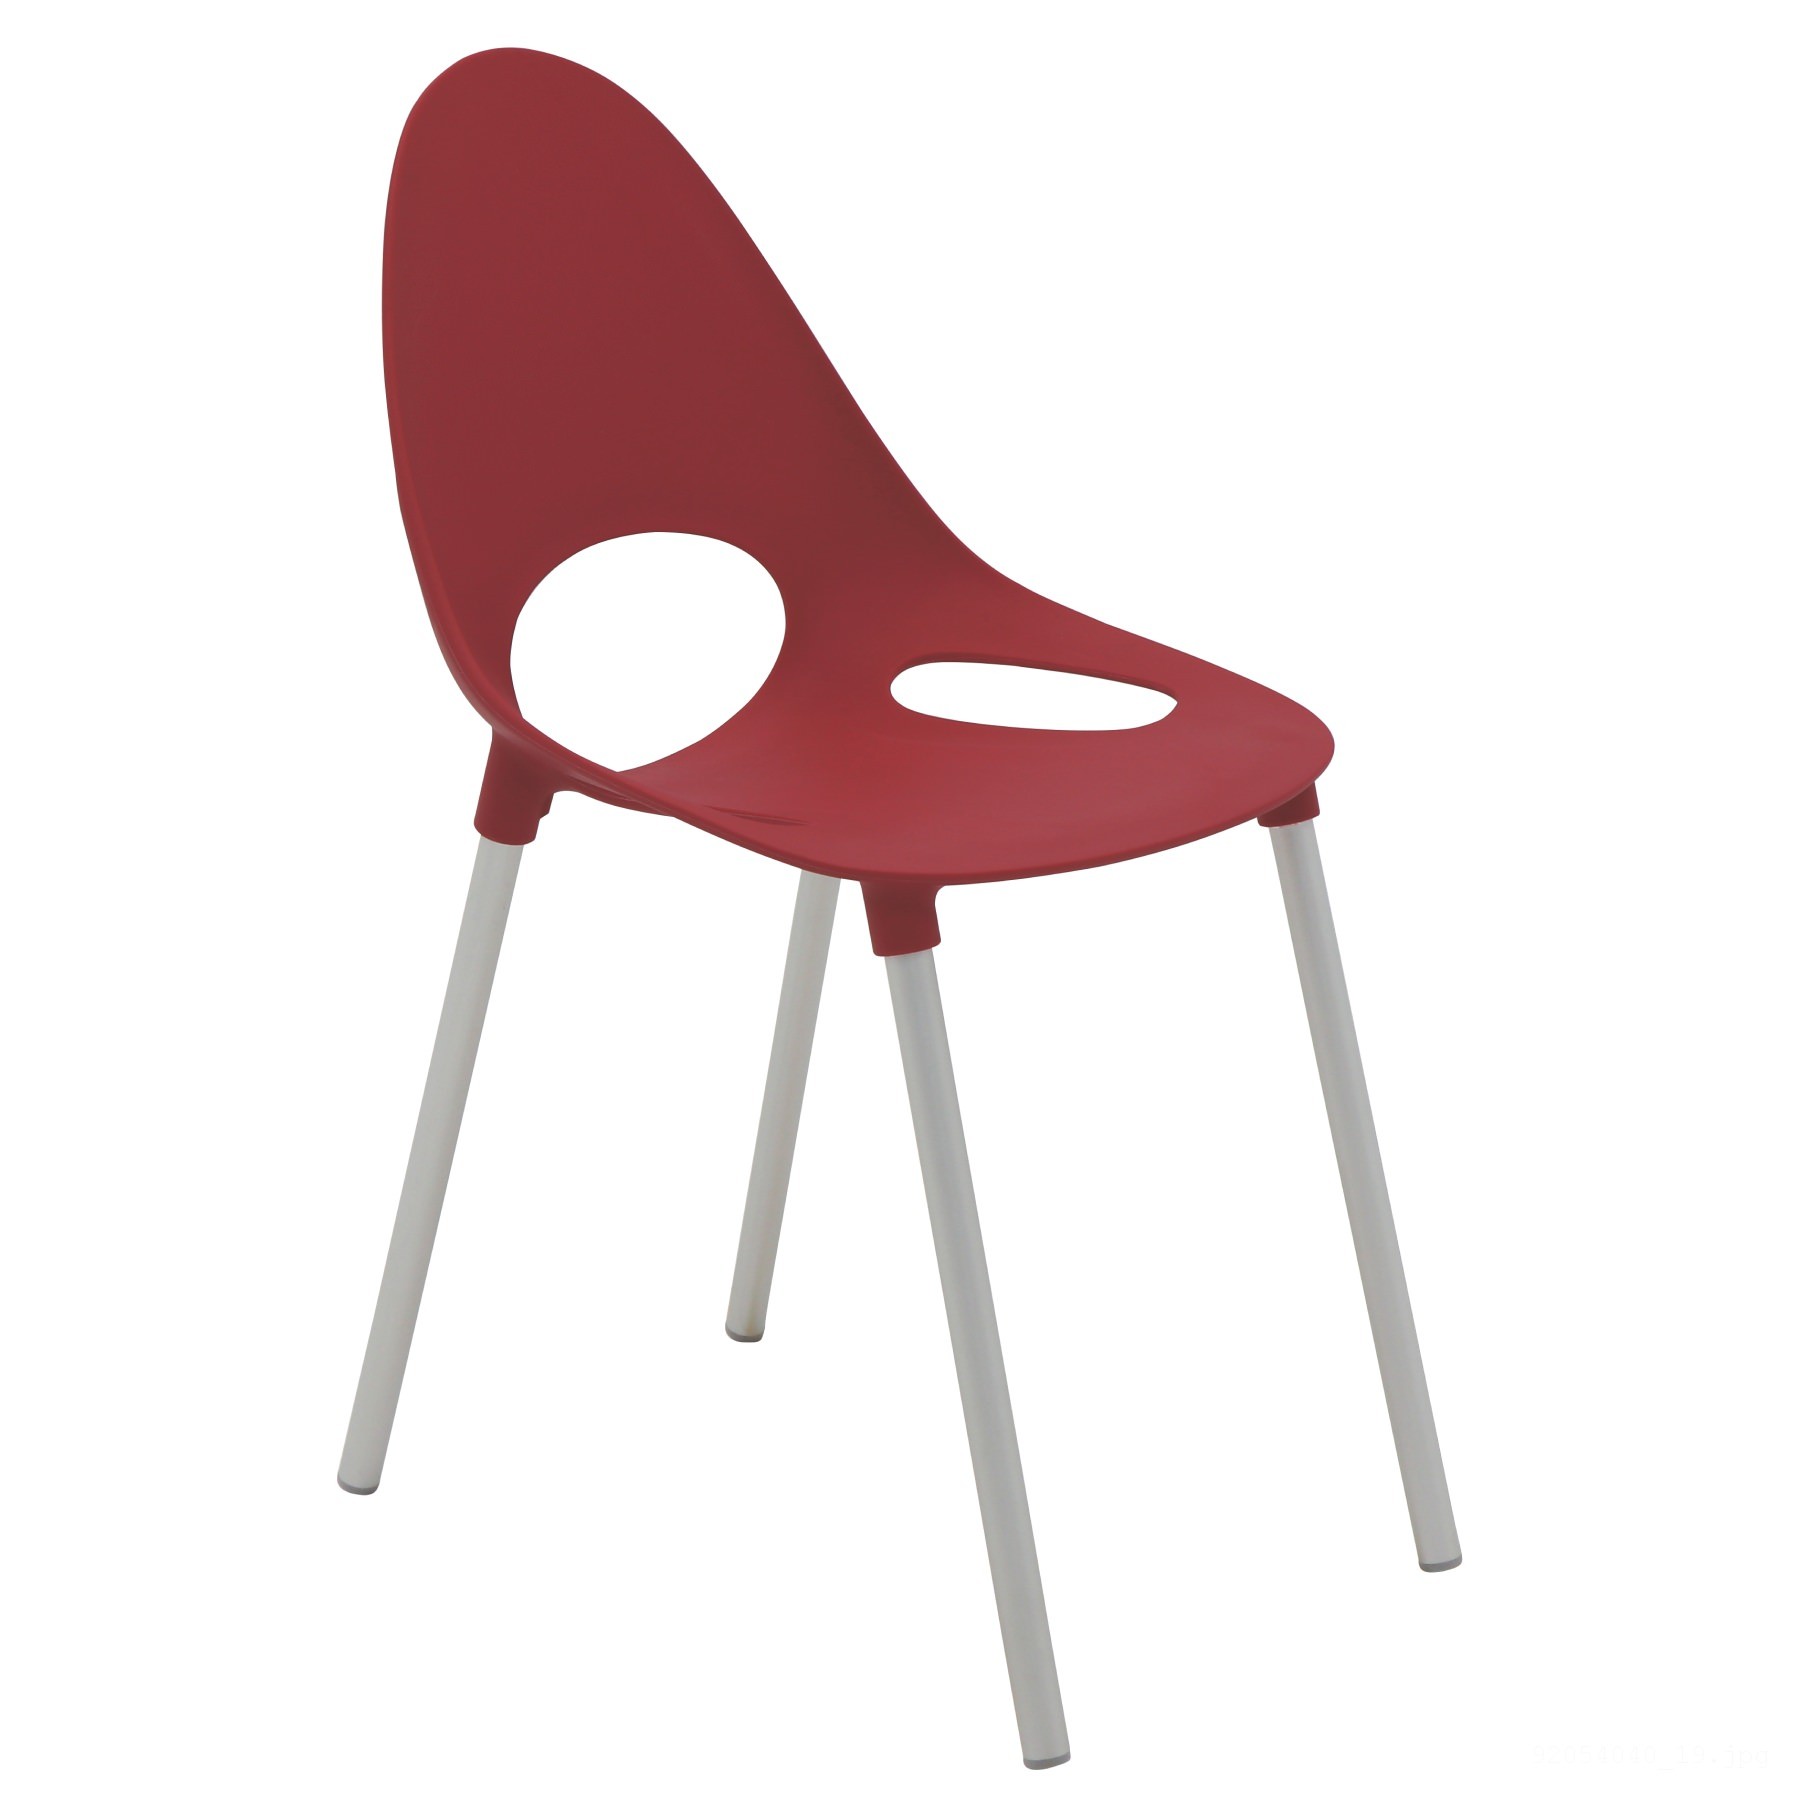 Cadeira Elisa Summa em Polipropileno Vermelho com Pernas de Alumínio Anodizado